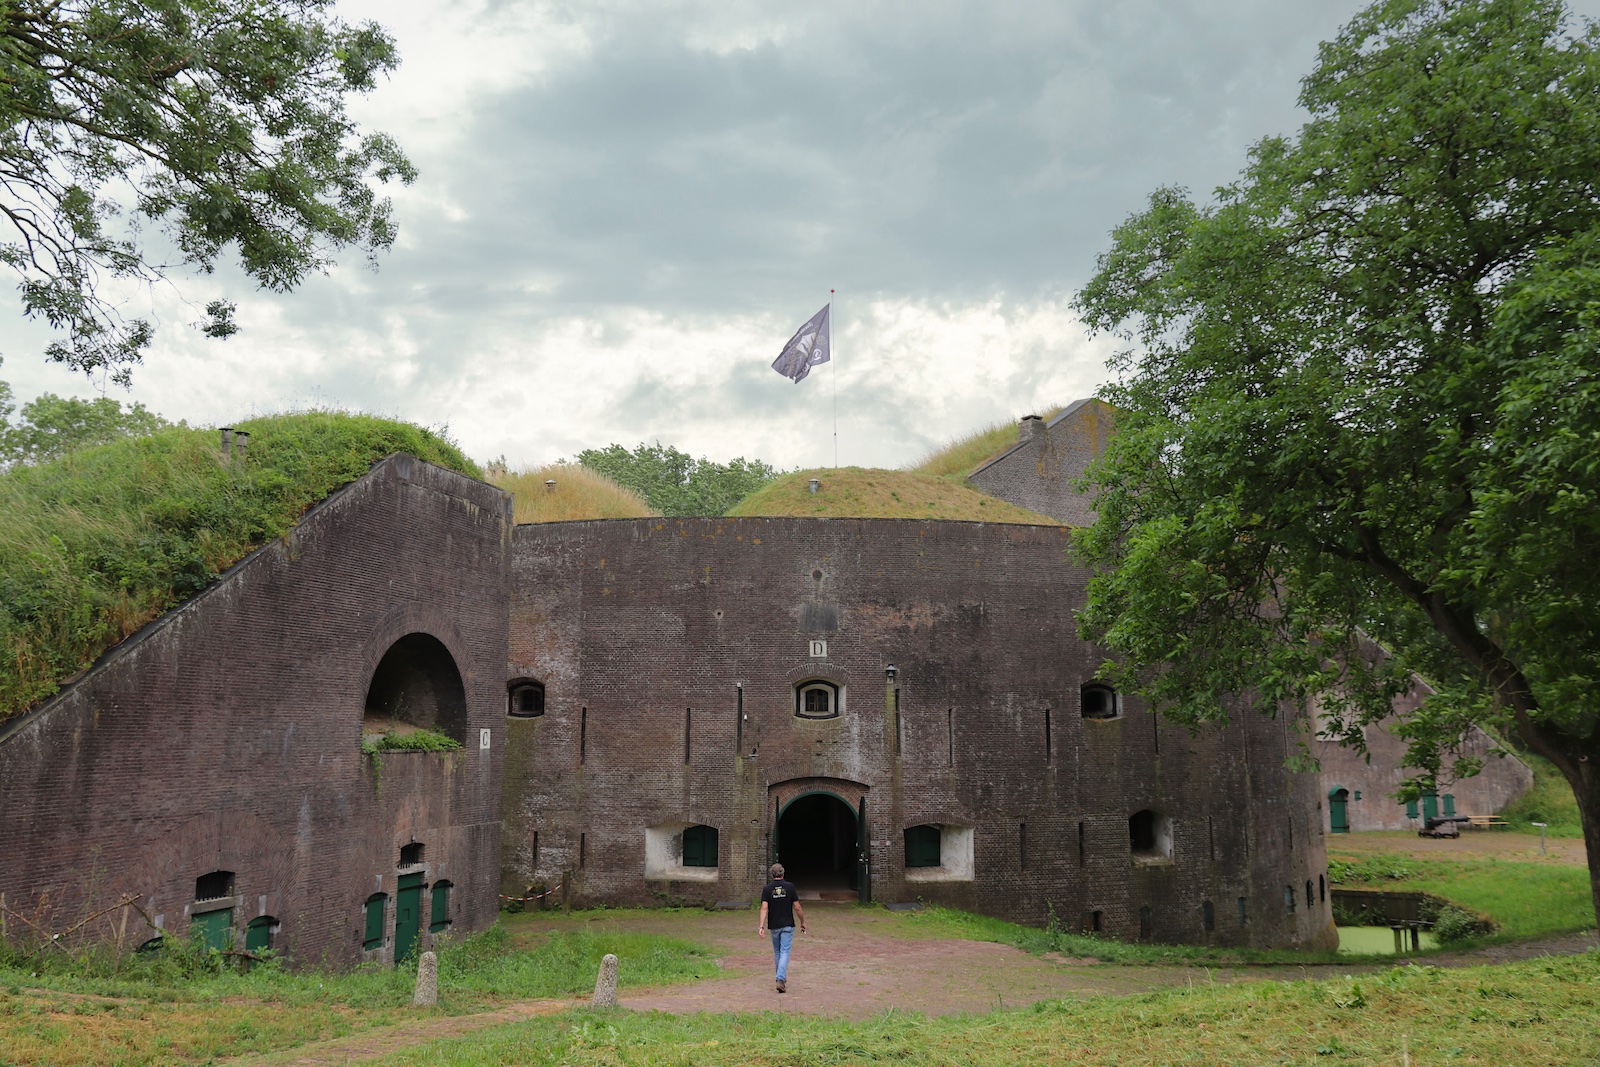 Fort Everdingen, home of Brouwerij Duits & Lauret